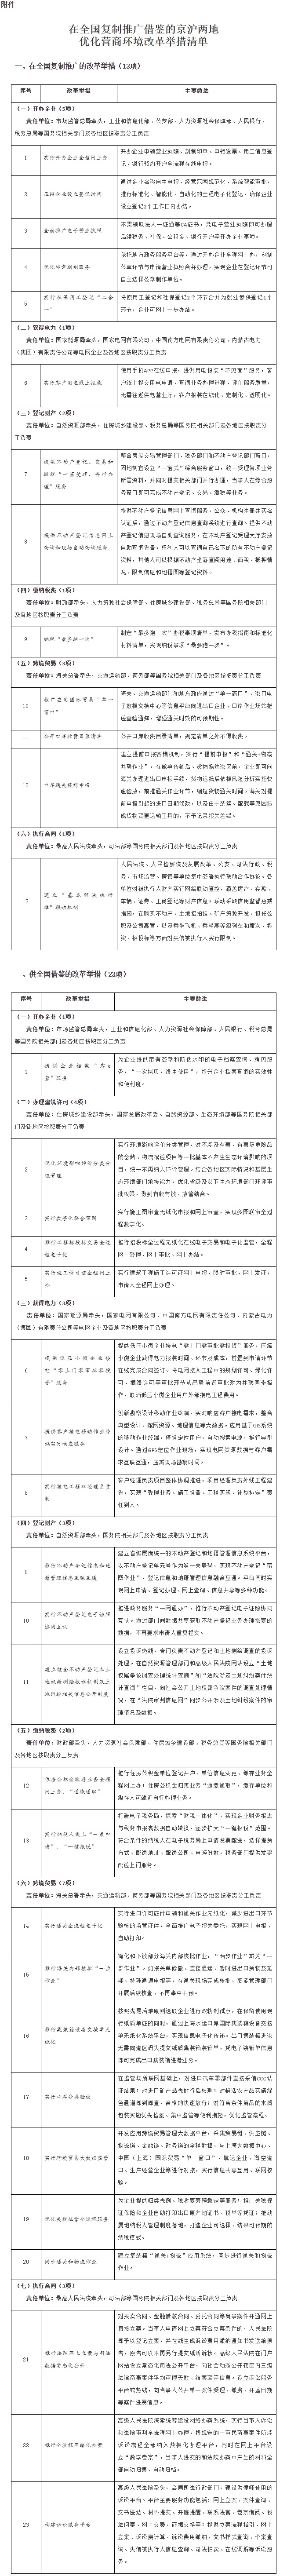 附件：在全国复制推广借鉴的京沪两地优化营商环境改革举措清单.jpg